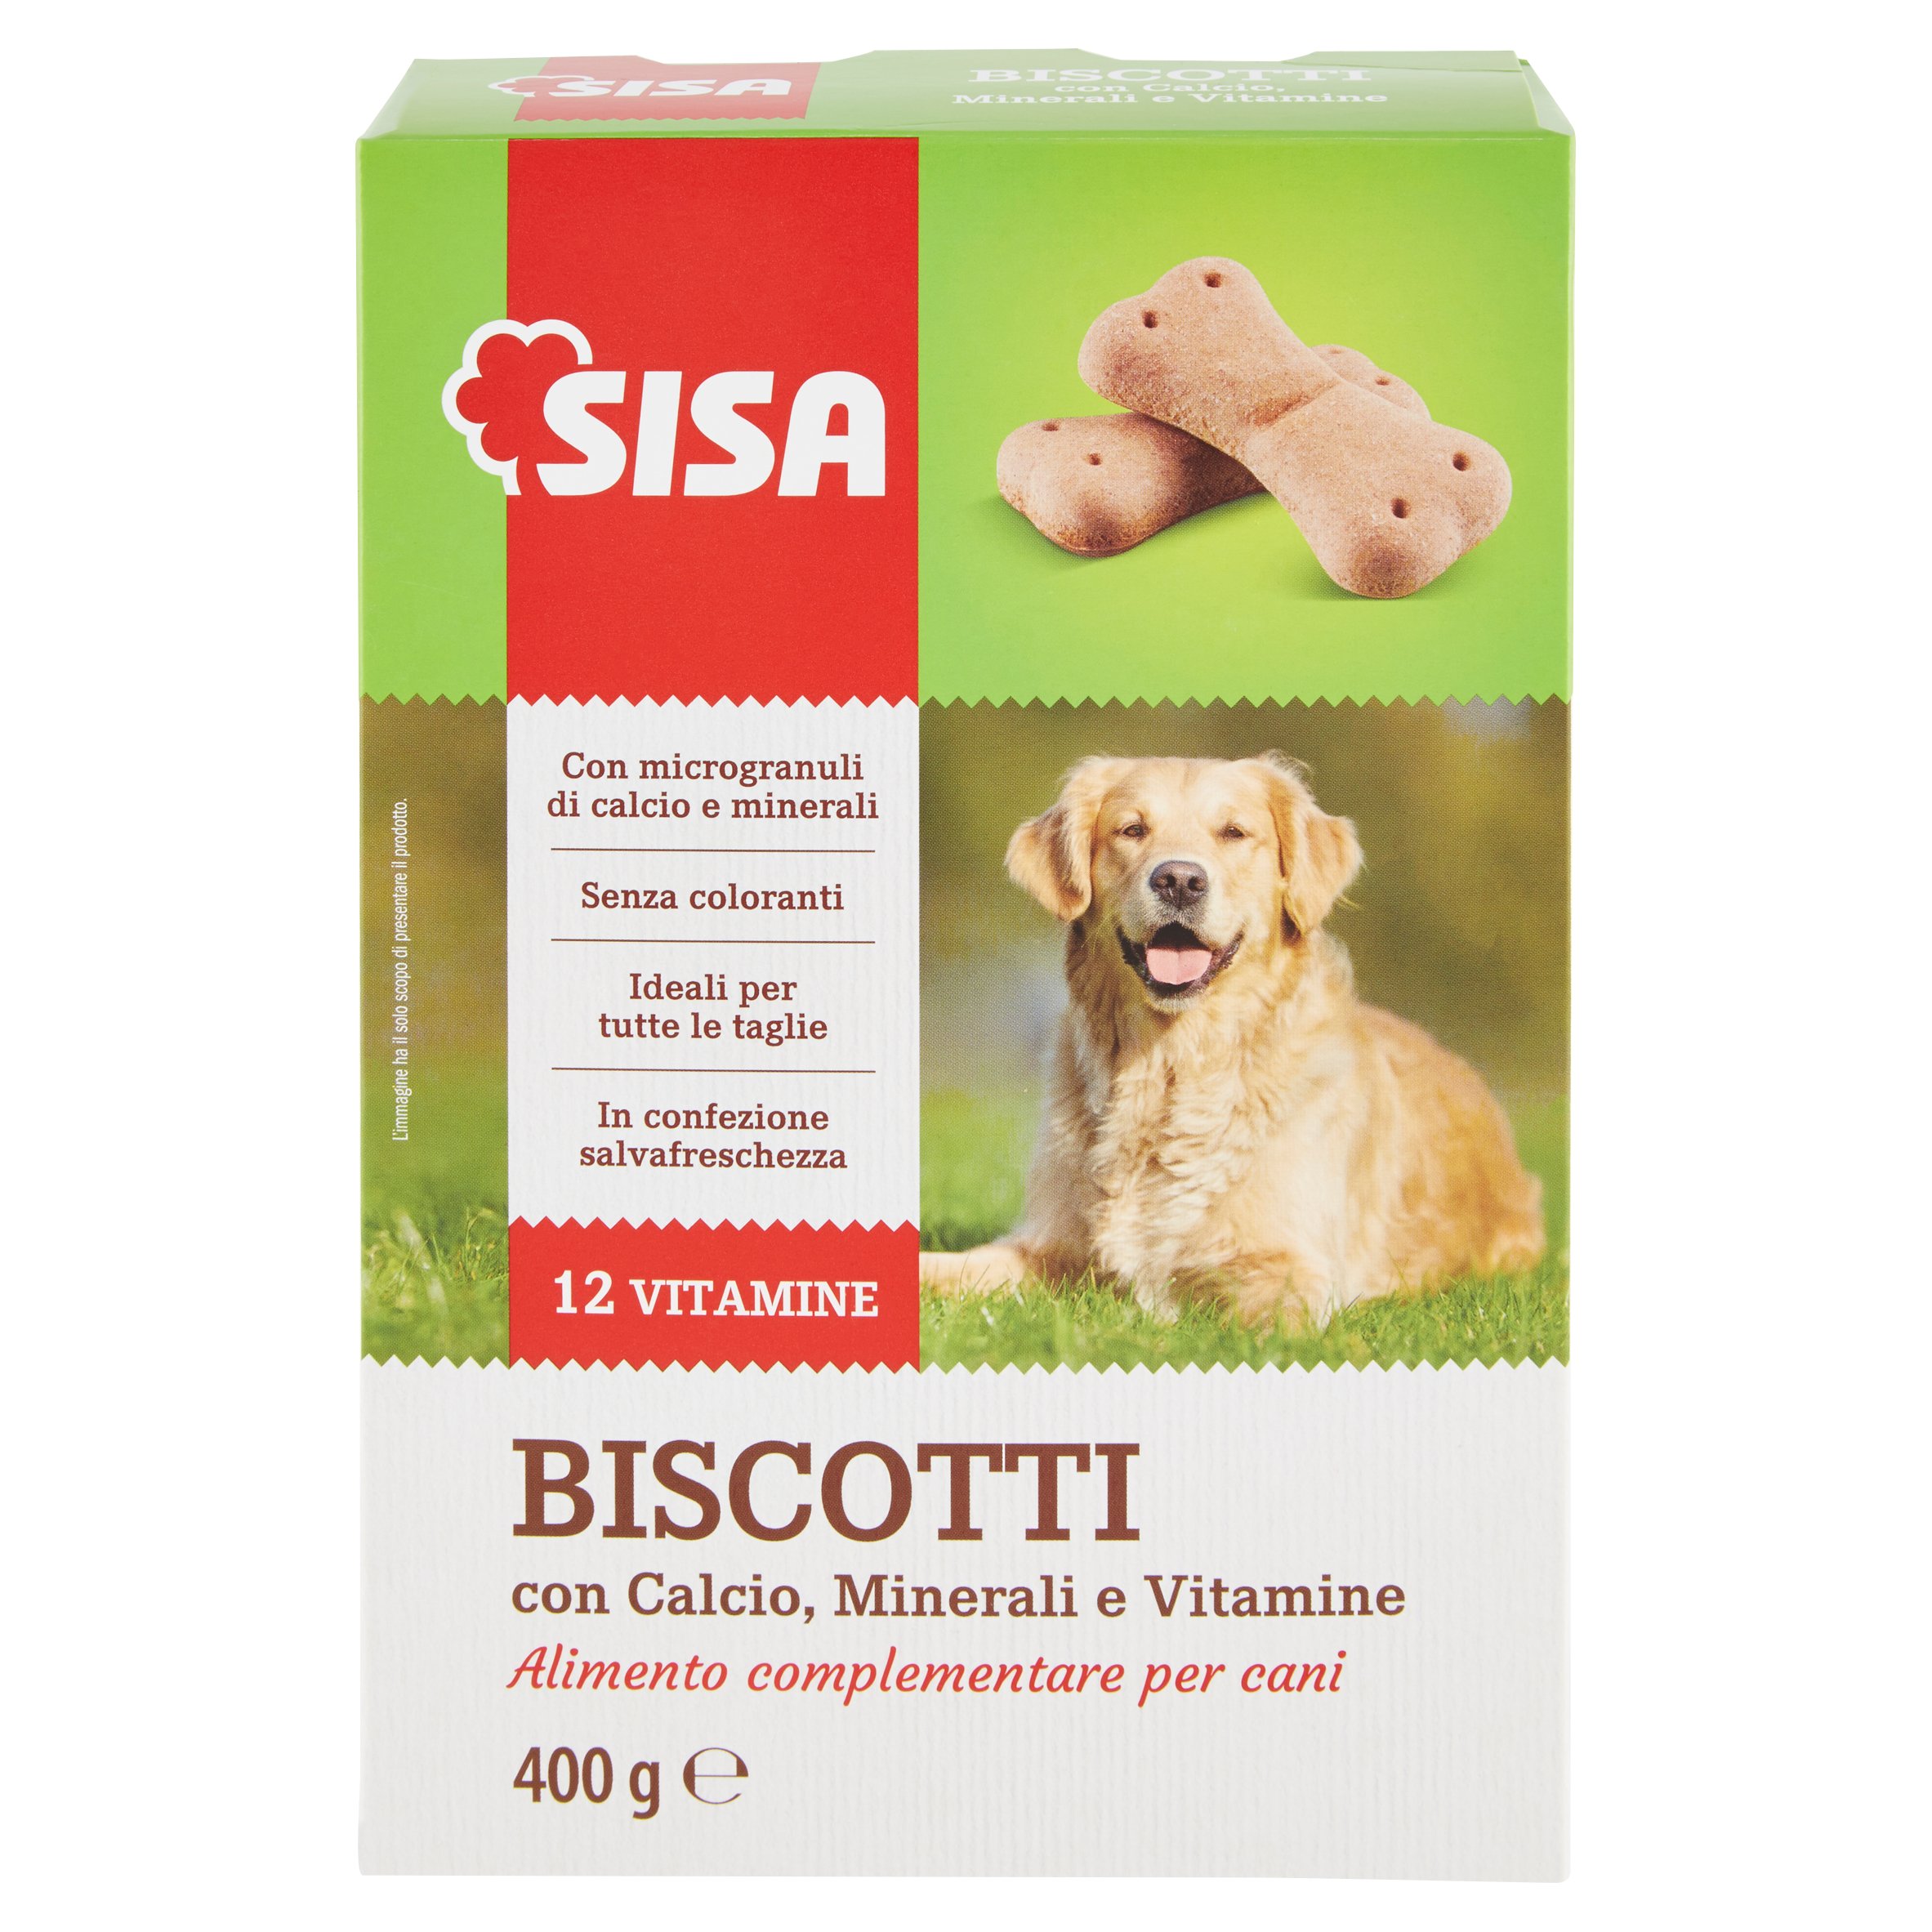 Sisa Biscotti con Calcio, Minerali e Vitamine 400 g - SuperSISA